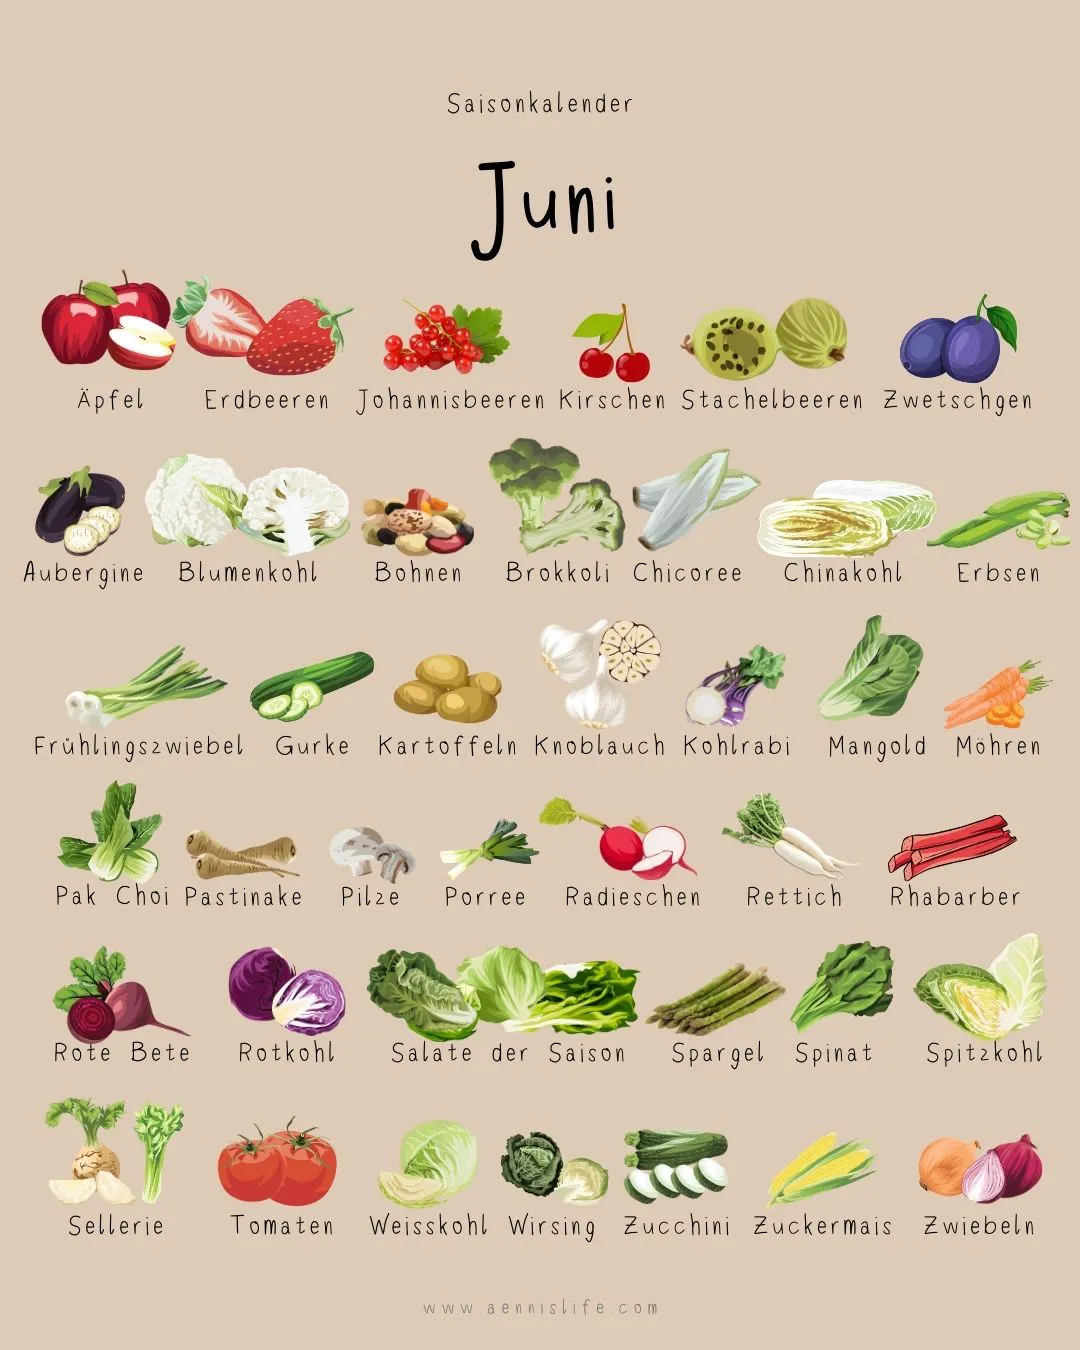 Saisonkalender Juni, bei dem die Obst und Gemüse mit Bild und Text abgebildet sind.